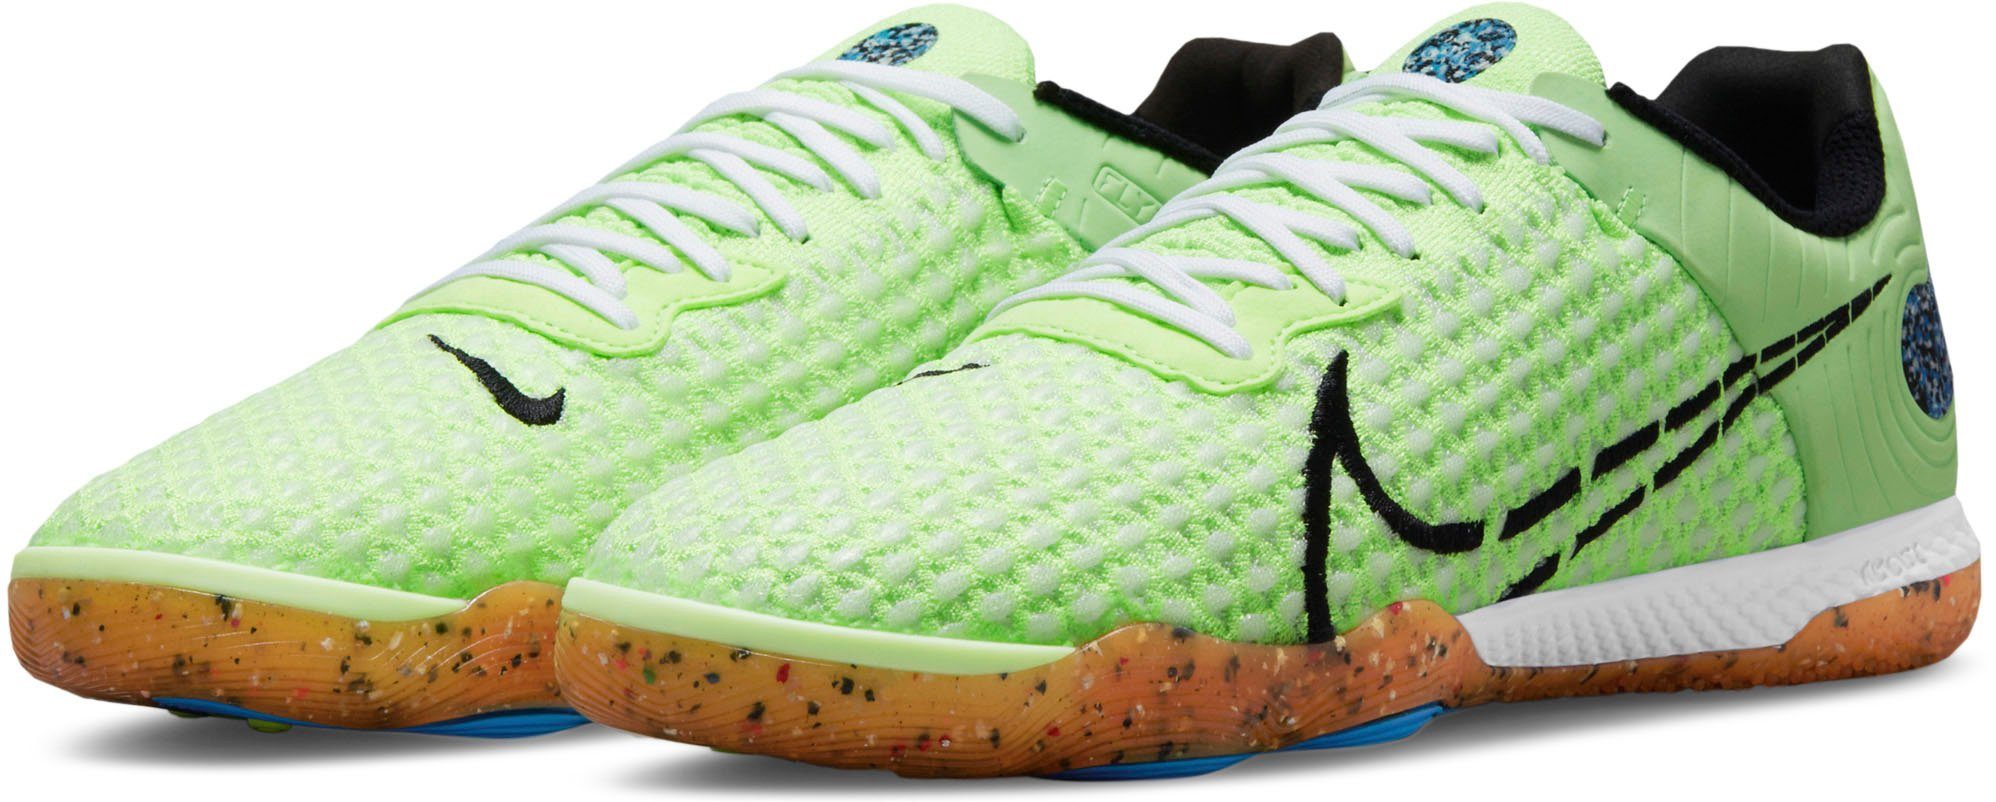 Nike Hallenfußballschuhe Damen » Noppenschuhe online kaufen | OTTO